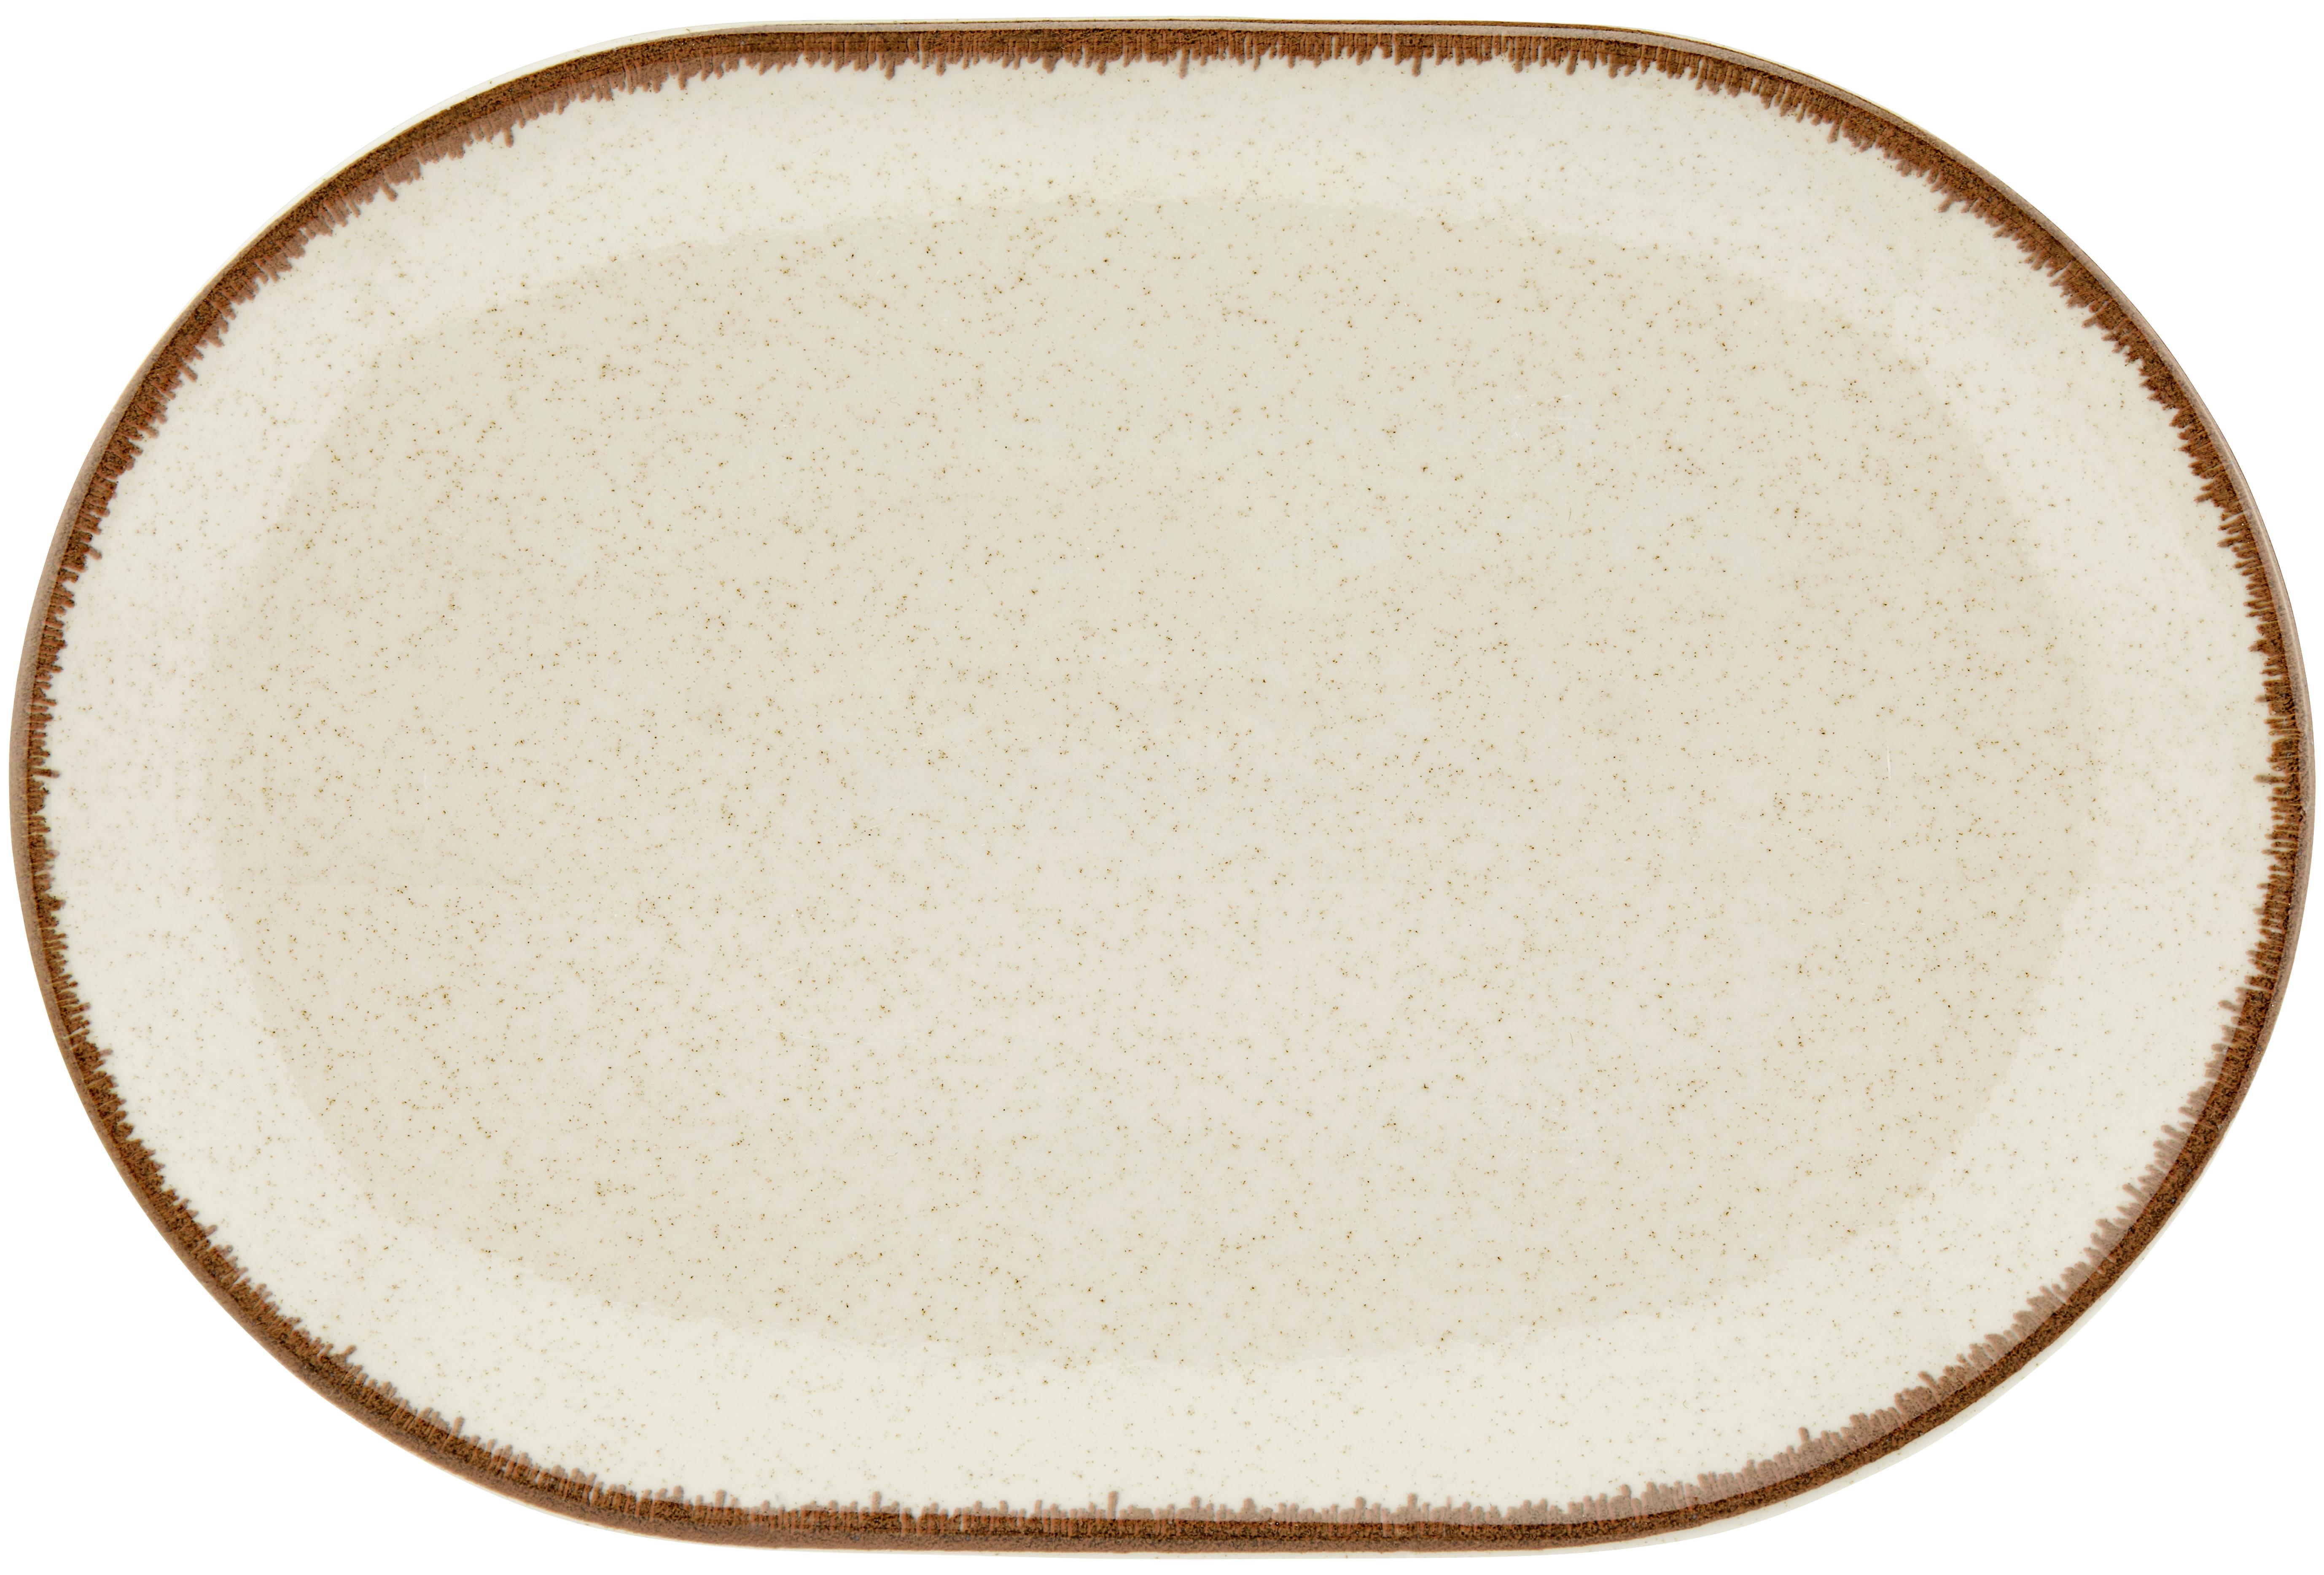 Servierplatte Porzellan Beige Sonora ca. 22x32 cm - Beige, MODERN, Keramik (22/32cm) - James Wood